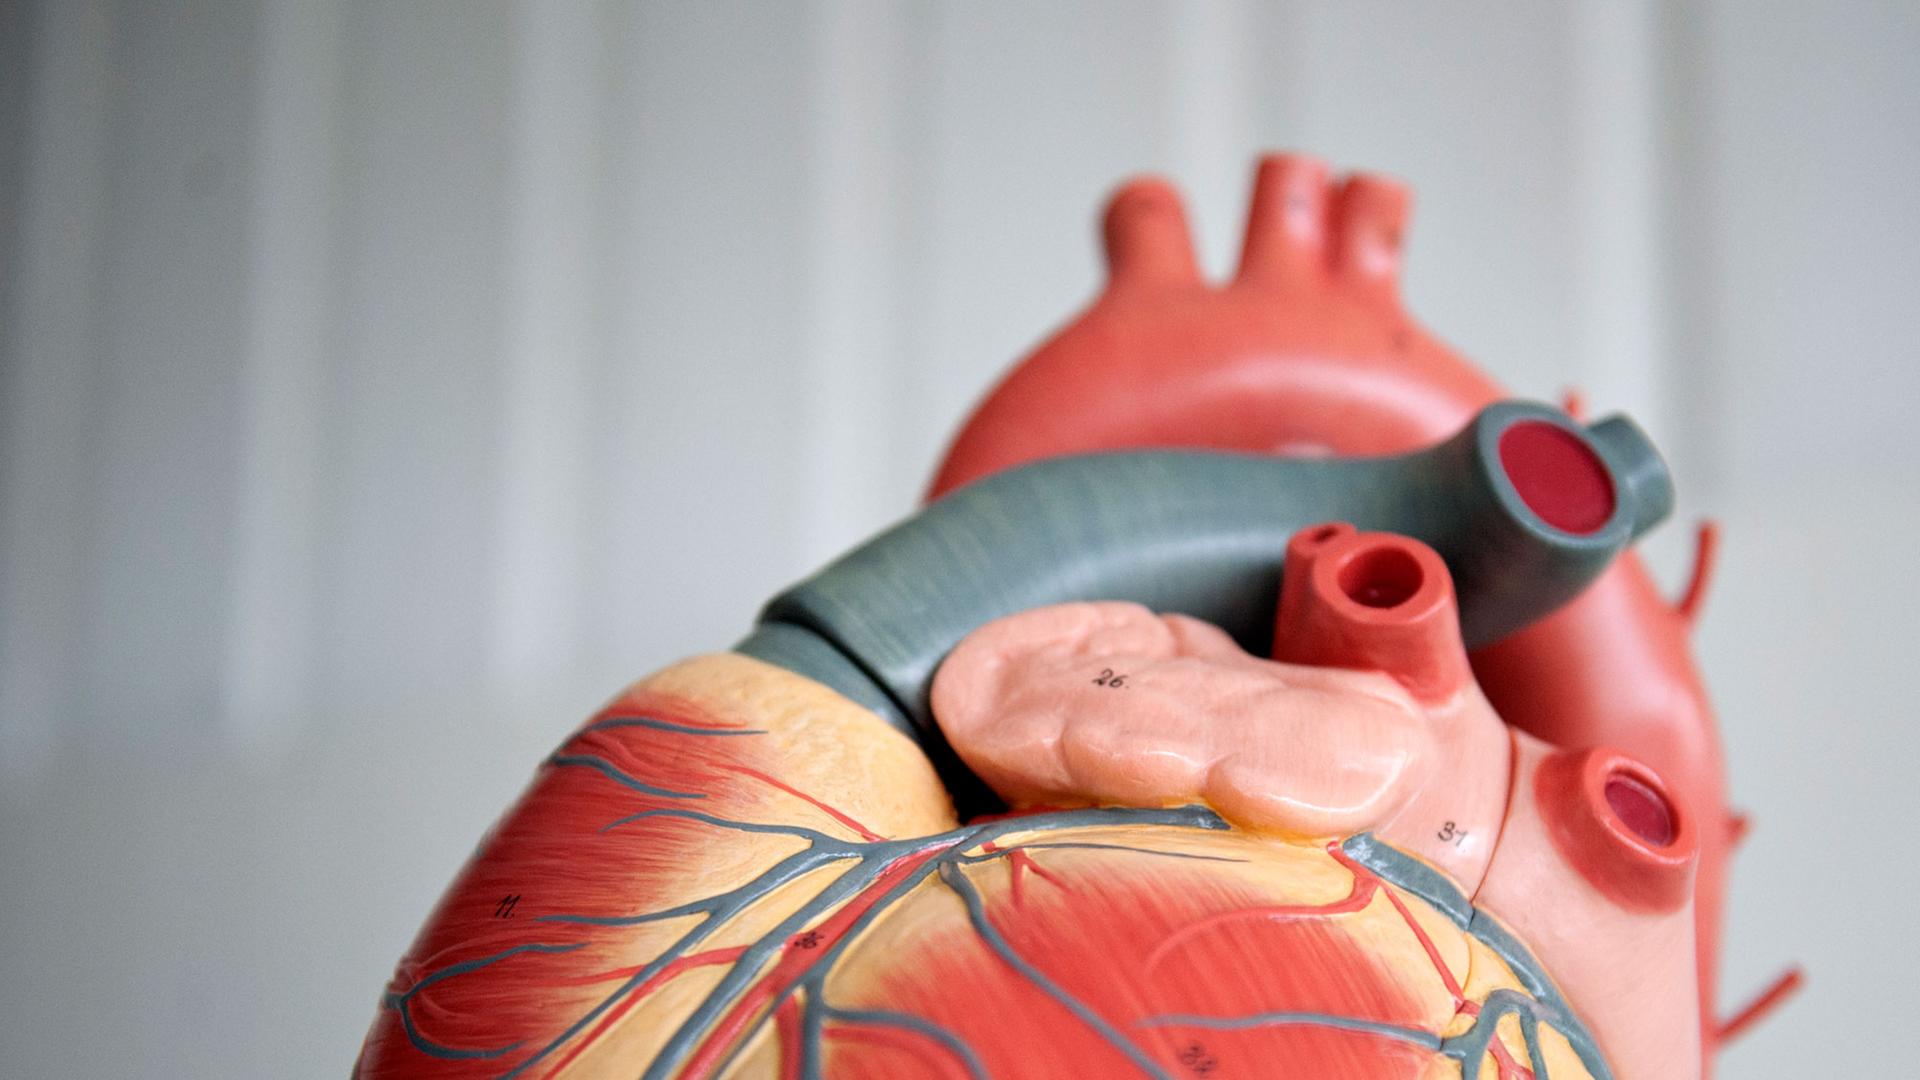 Das Anatomische Modell von einem menschlichen Herz, aufgenommen am 05.09.2012 in der Medizinischen Hochschule Hannover